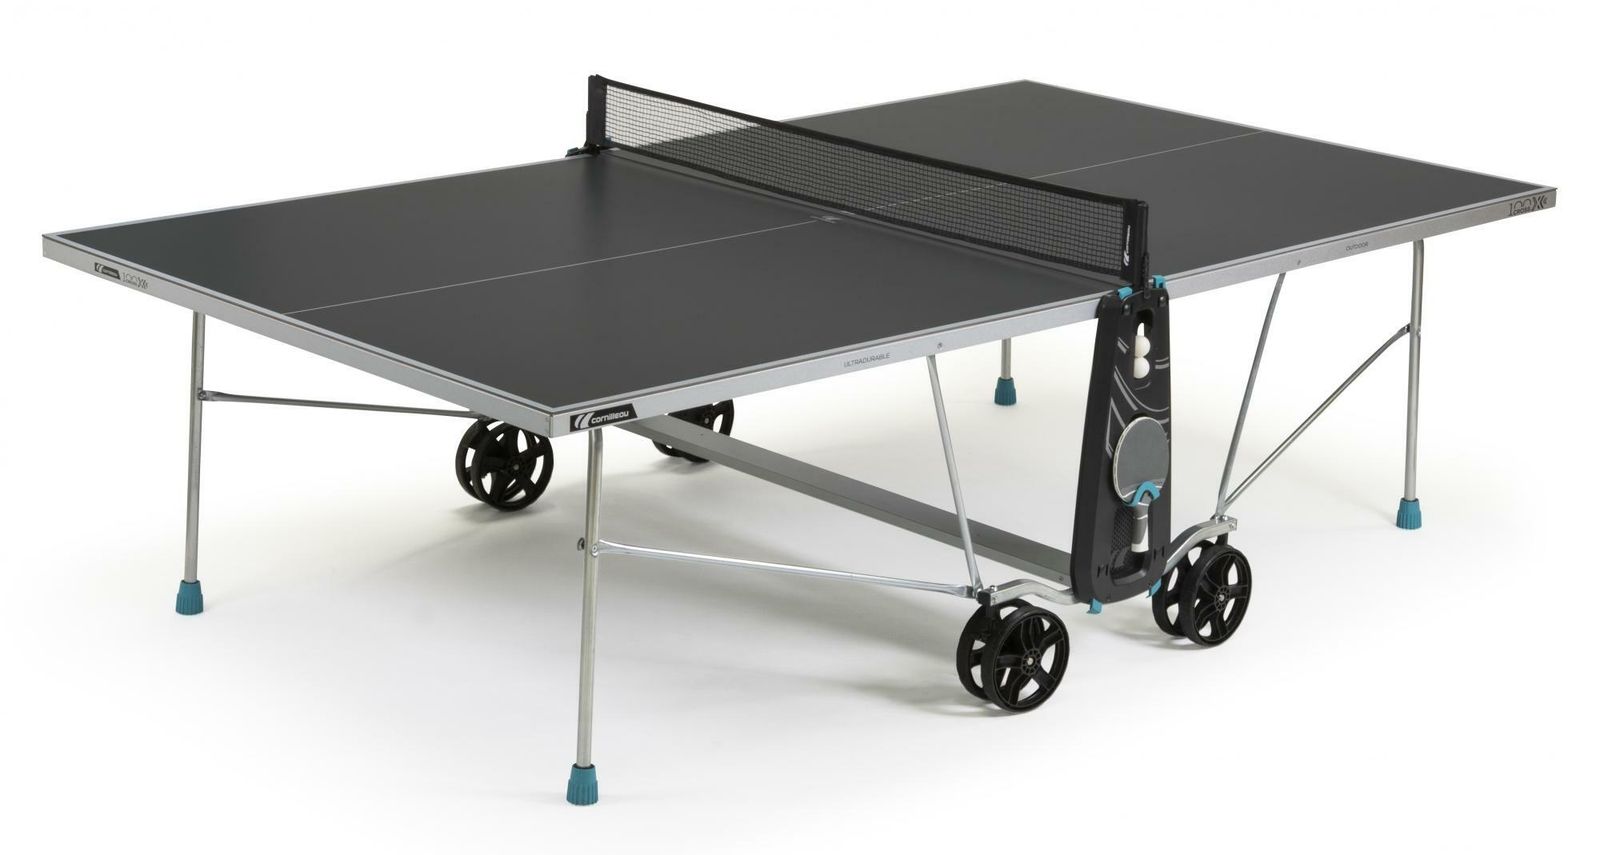 Теннисный стол Cornilleau всепогодный 100X Outdoor grey 4 mm фото №1